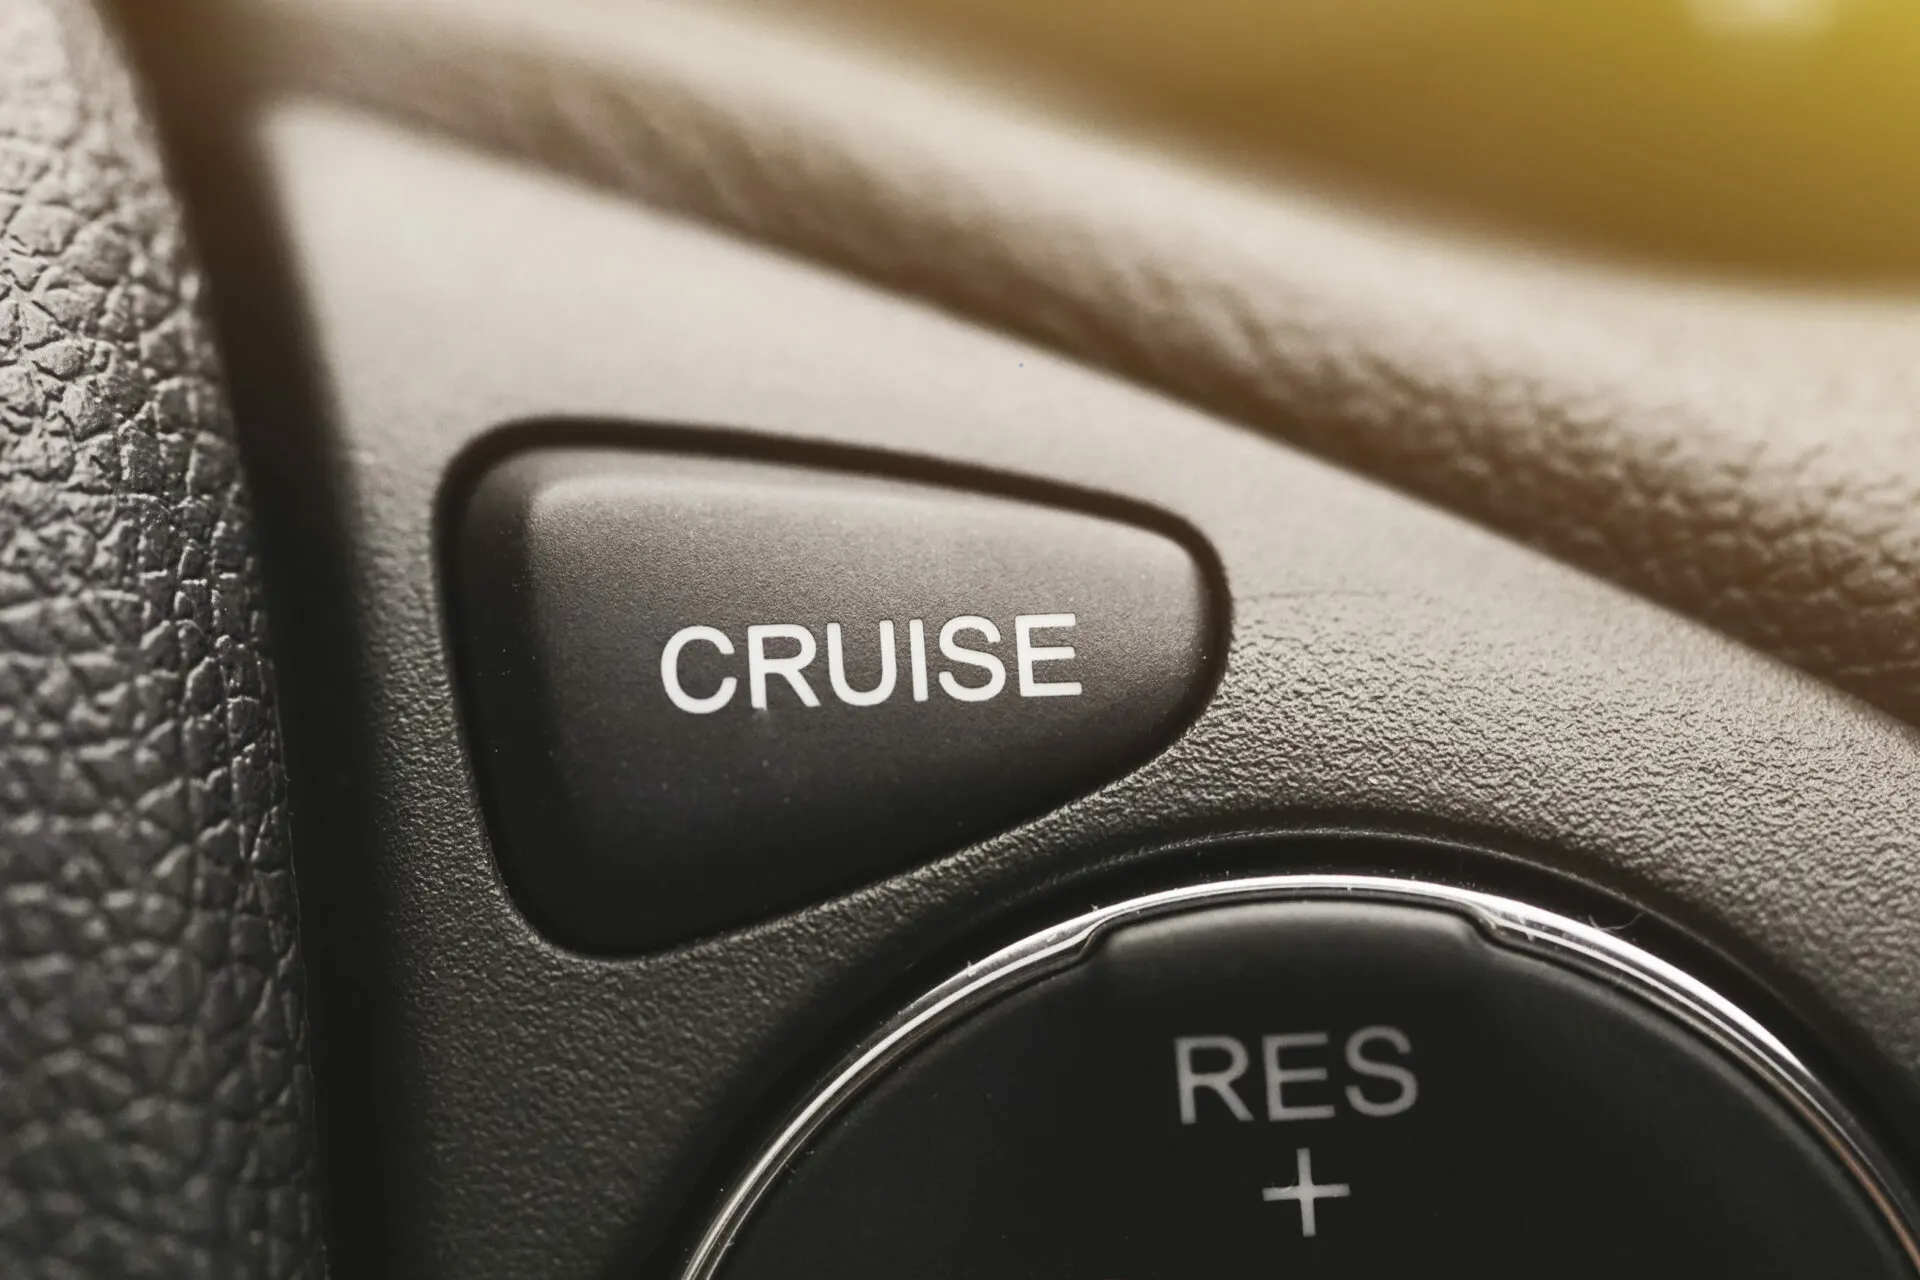 معنی cruise در ماشین